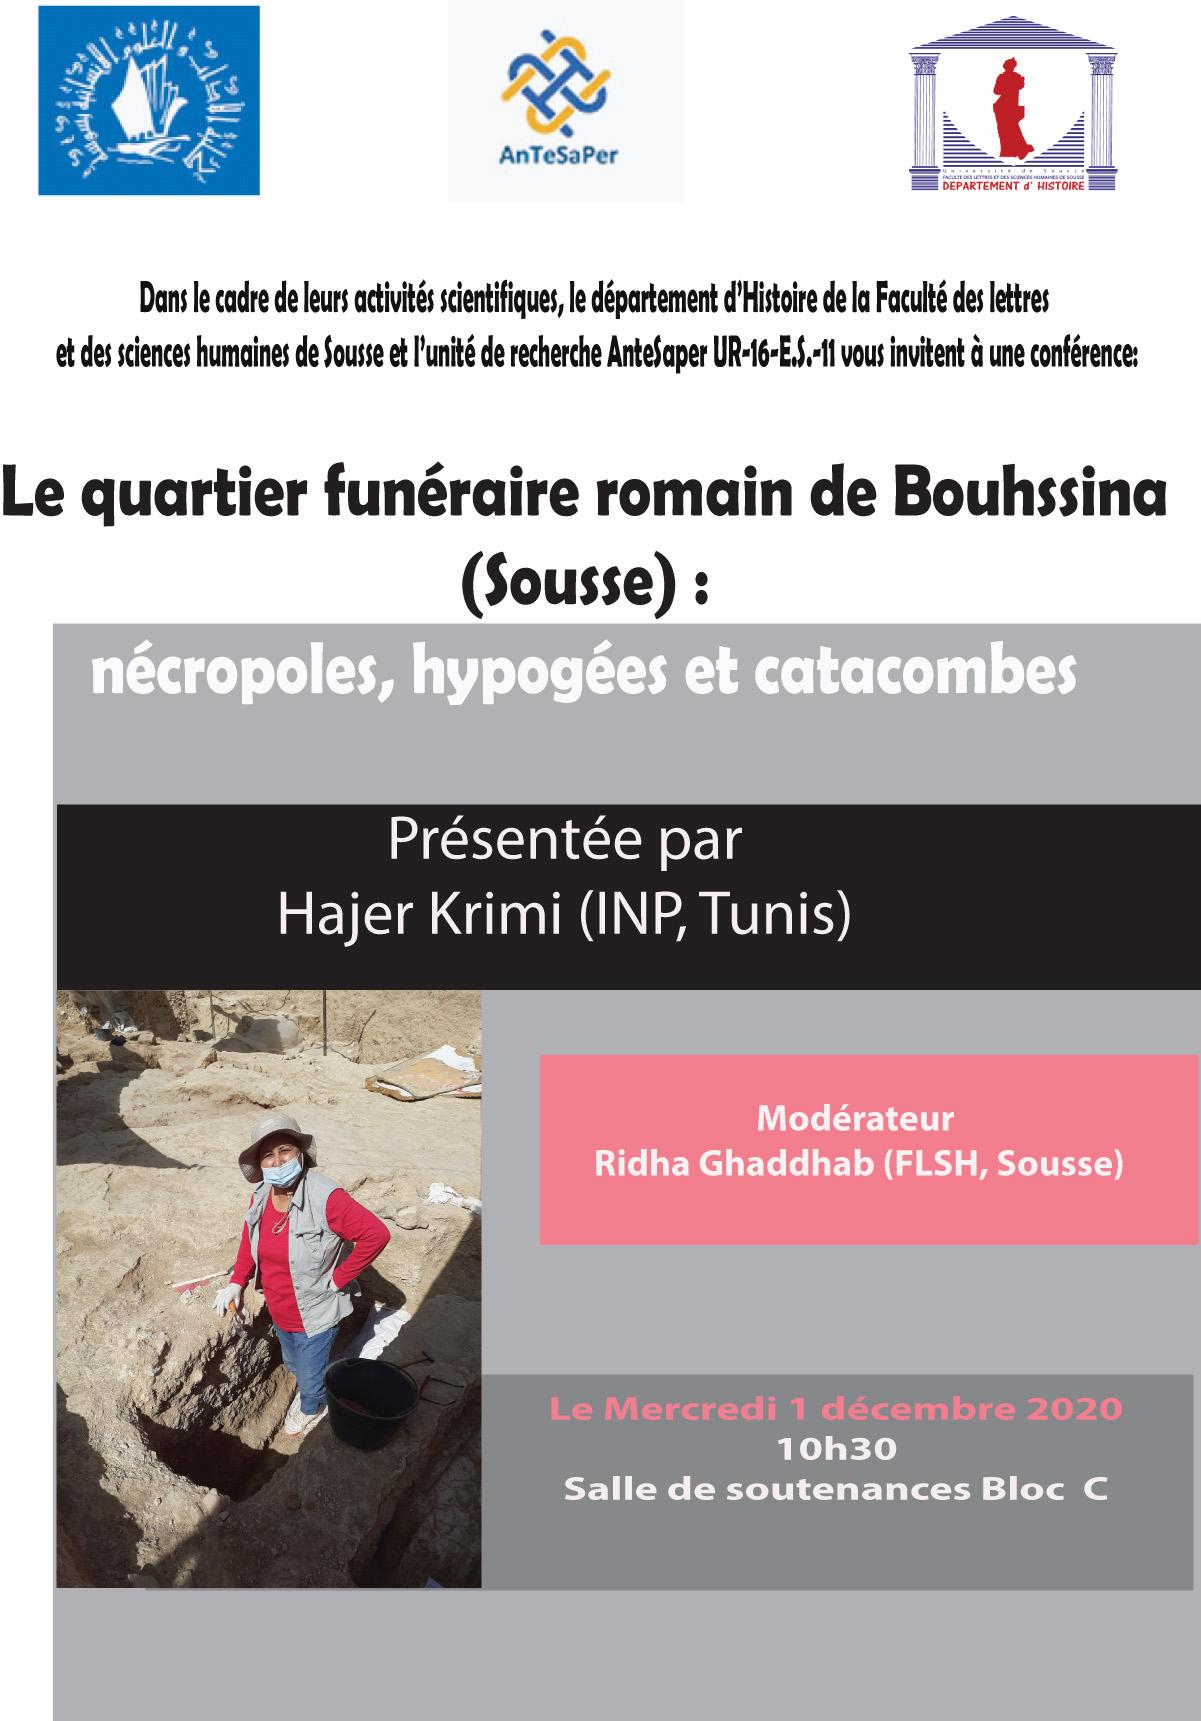 Le quartier funéraire romain de Bouhssina (Sousse) : nécropoles, hypogées et catacombes